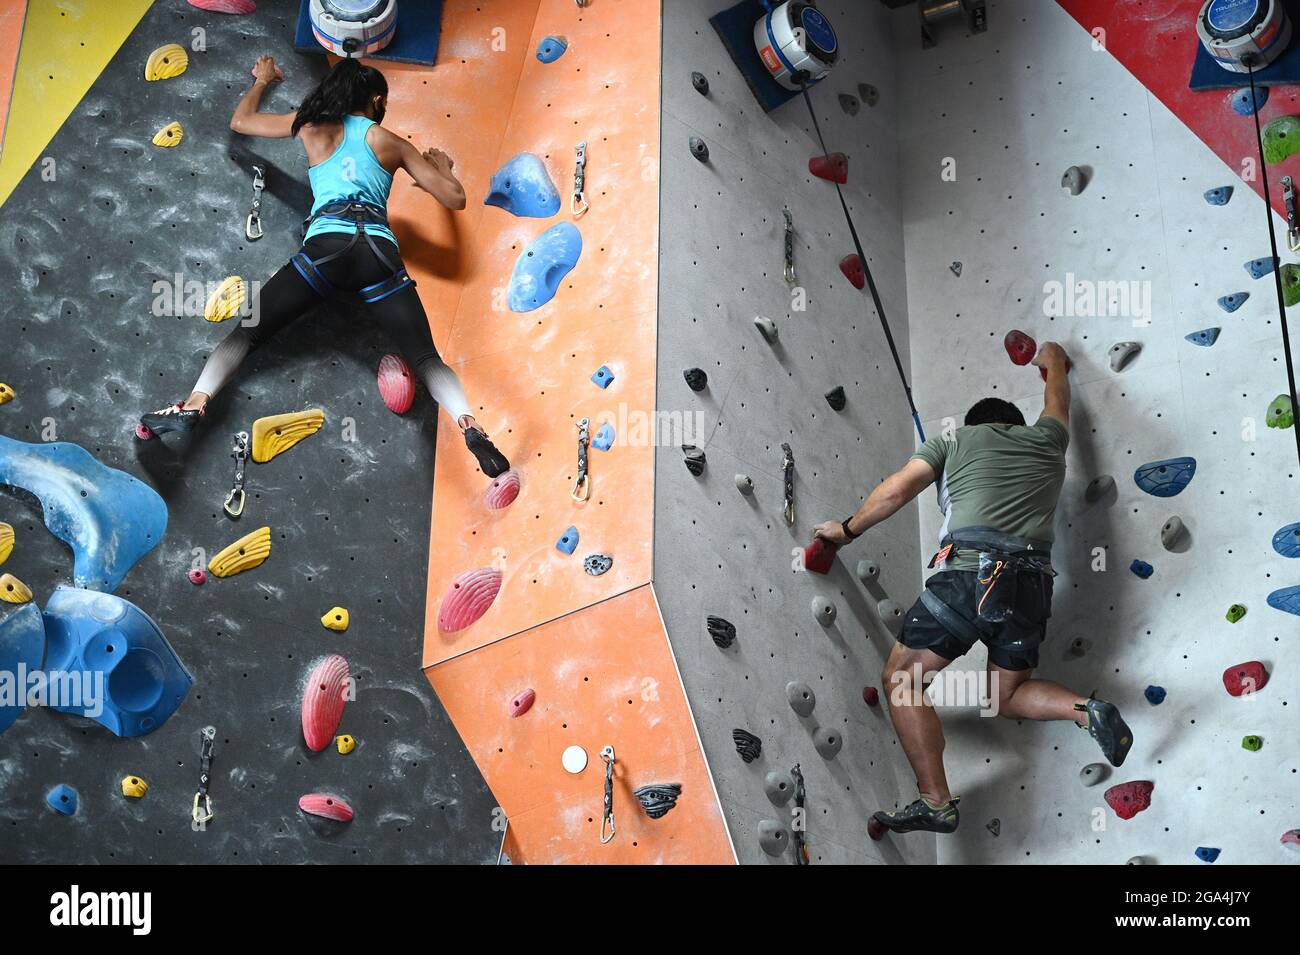 New York City, USA. Juli 2021. Zwei Kletterer nutzen „Auto Belay“, um im  Fox Room des Cliffs LIC Climbing and Fitness Center im Stadtteil Queens von  New York City, NY, am 28.